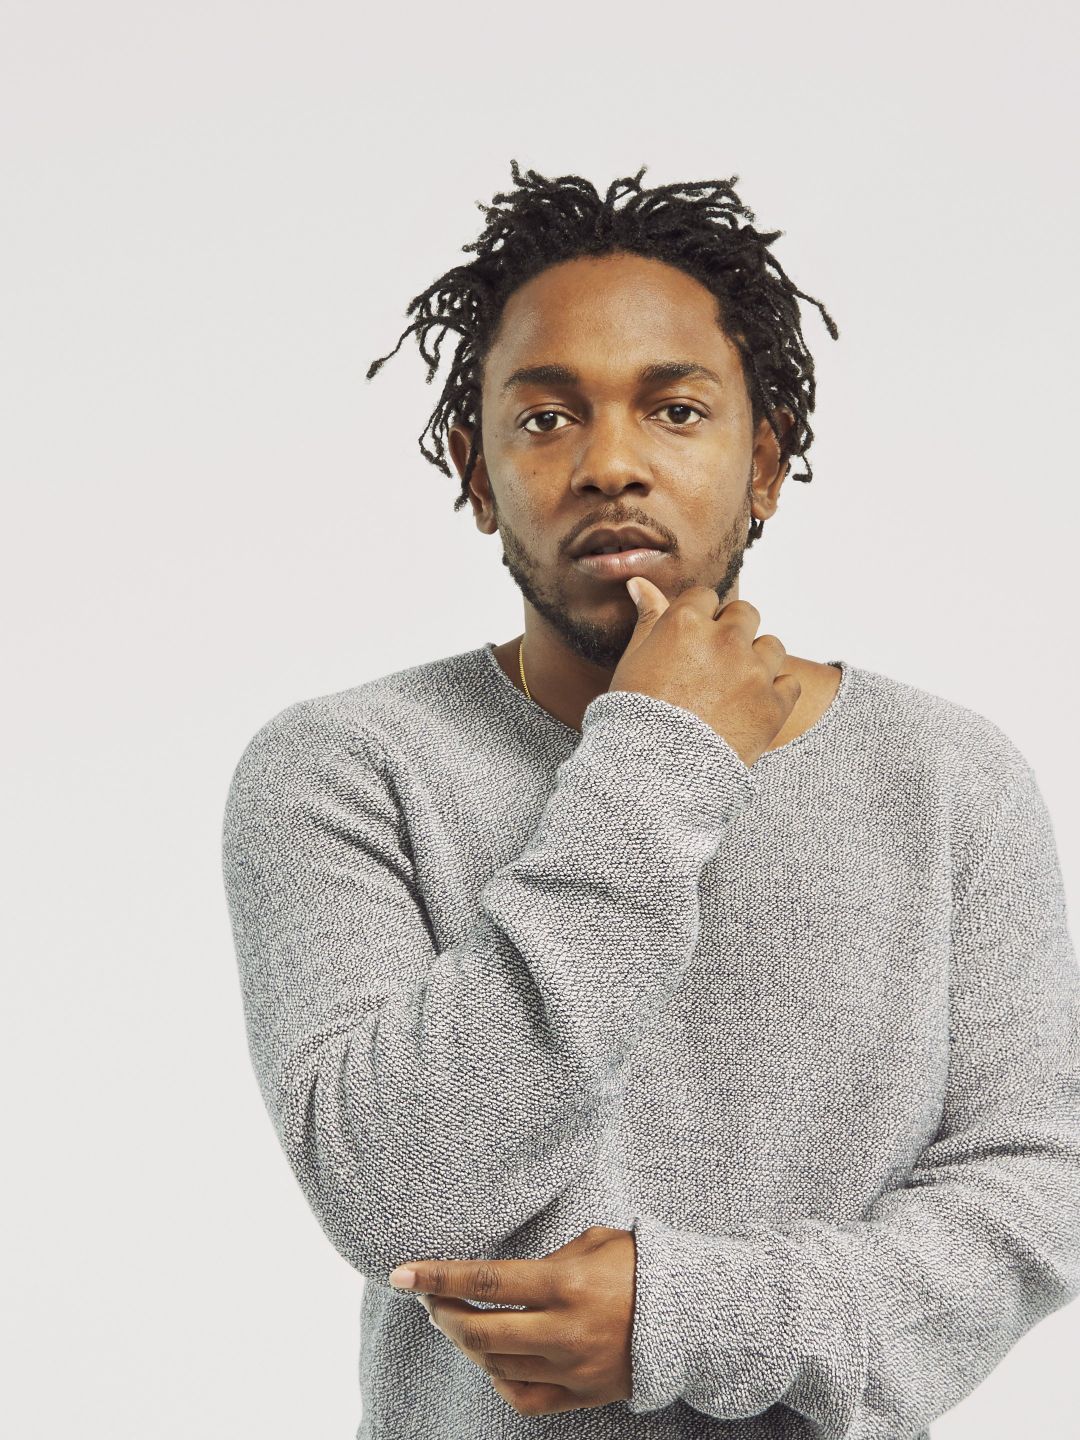 Kendrick Lamar young pics